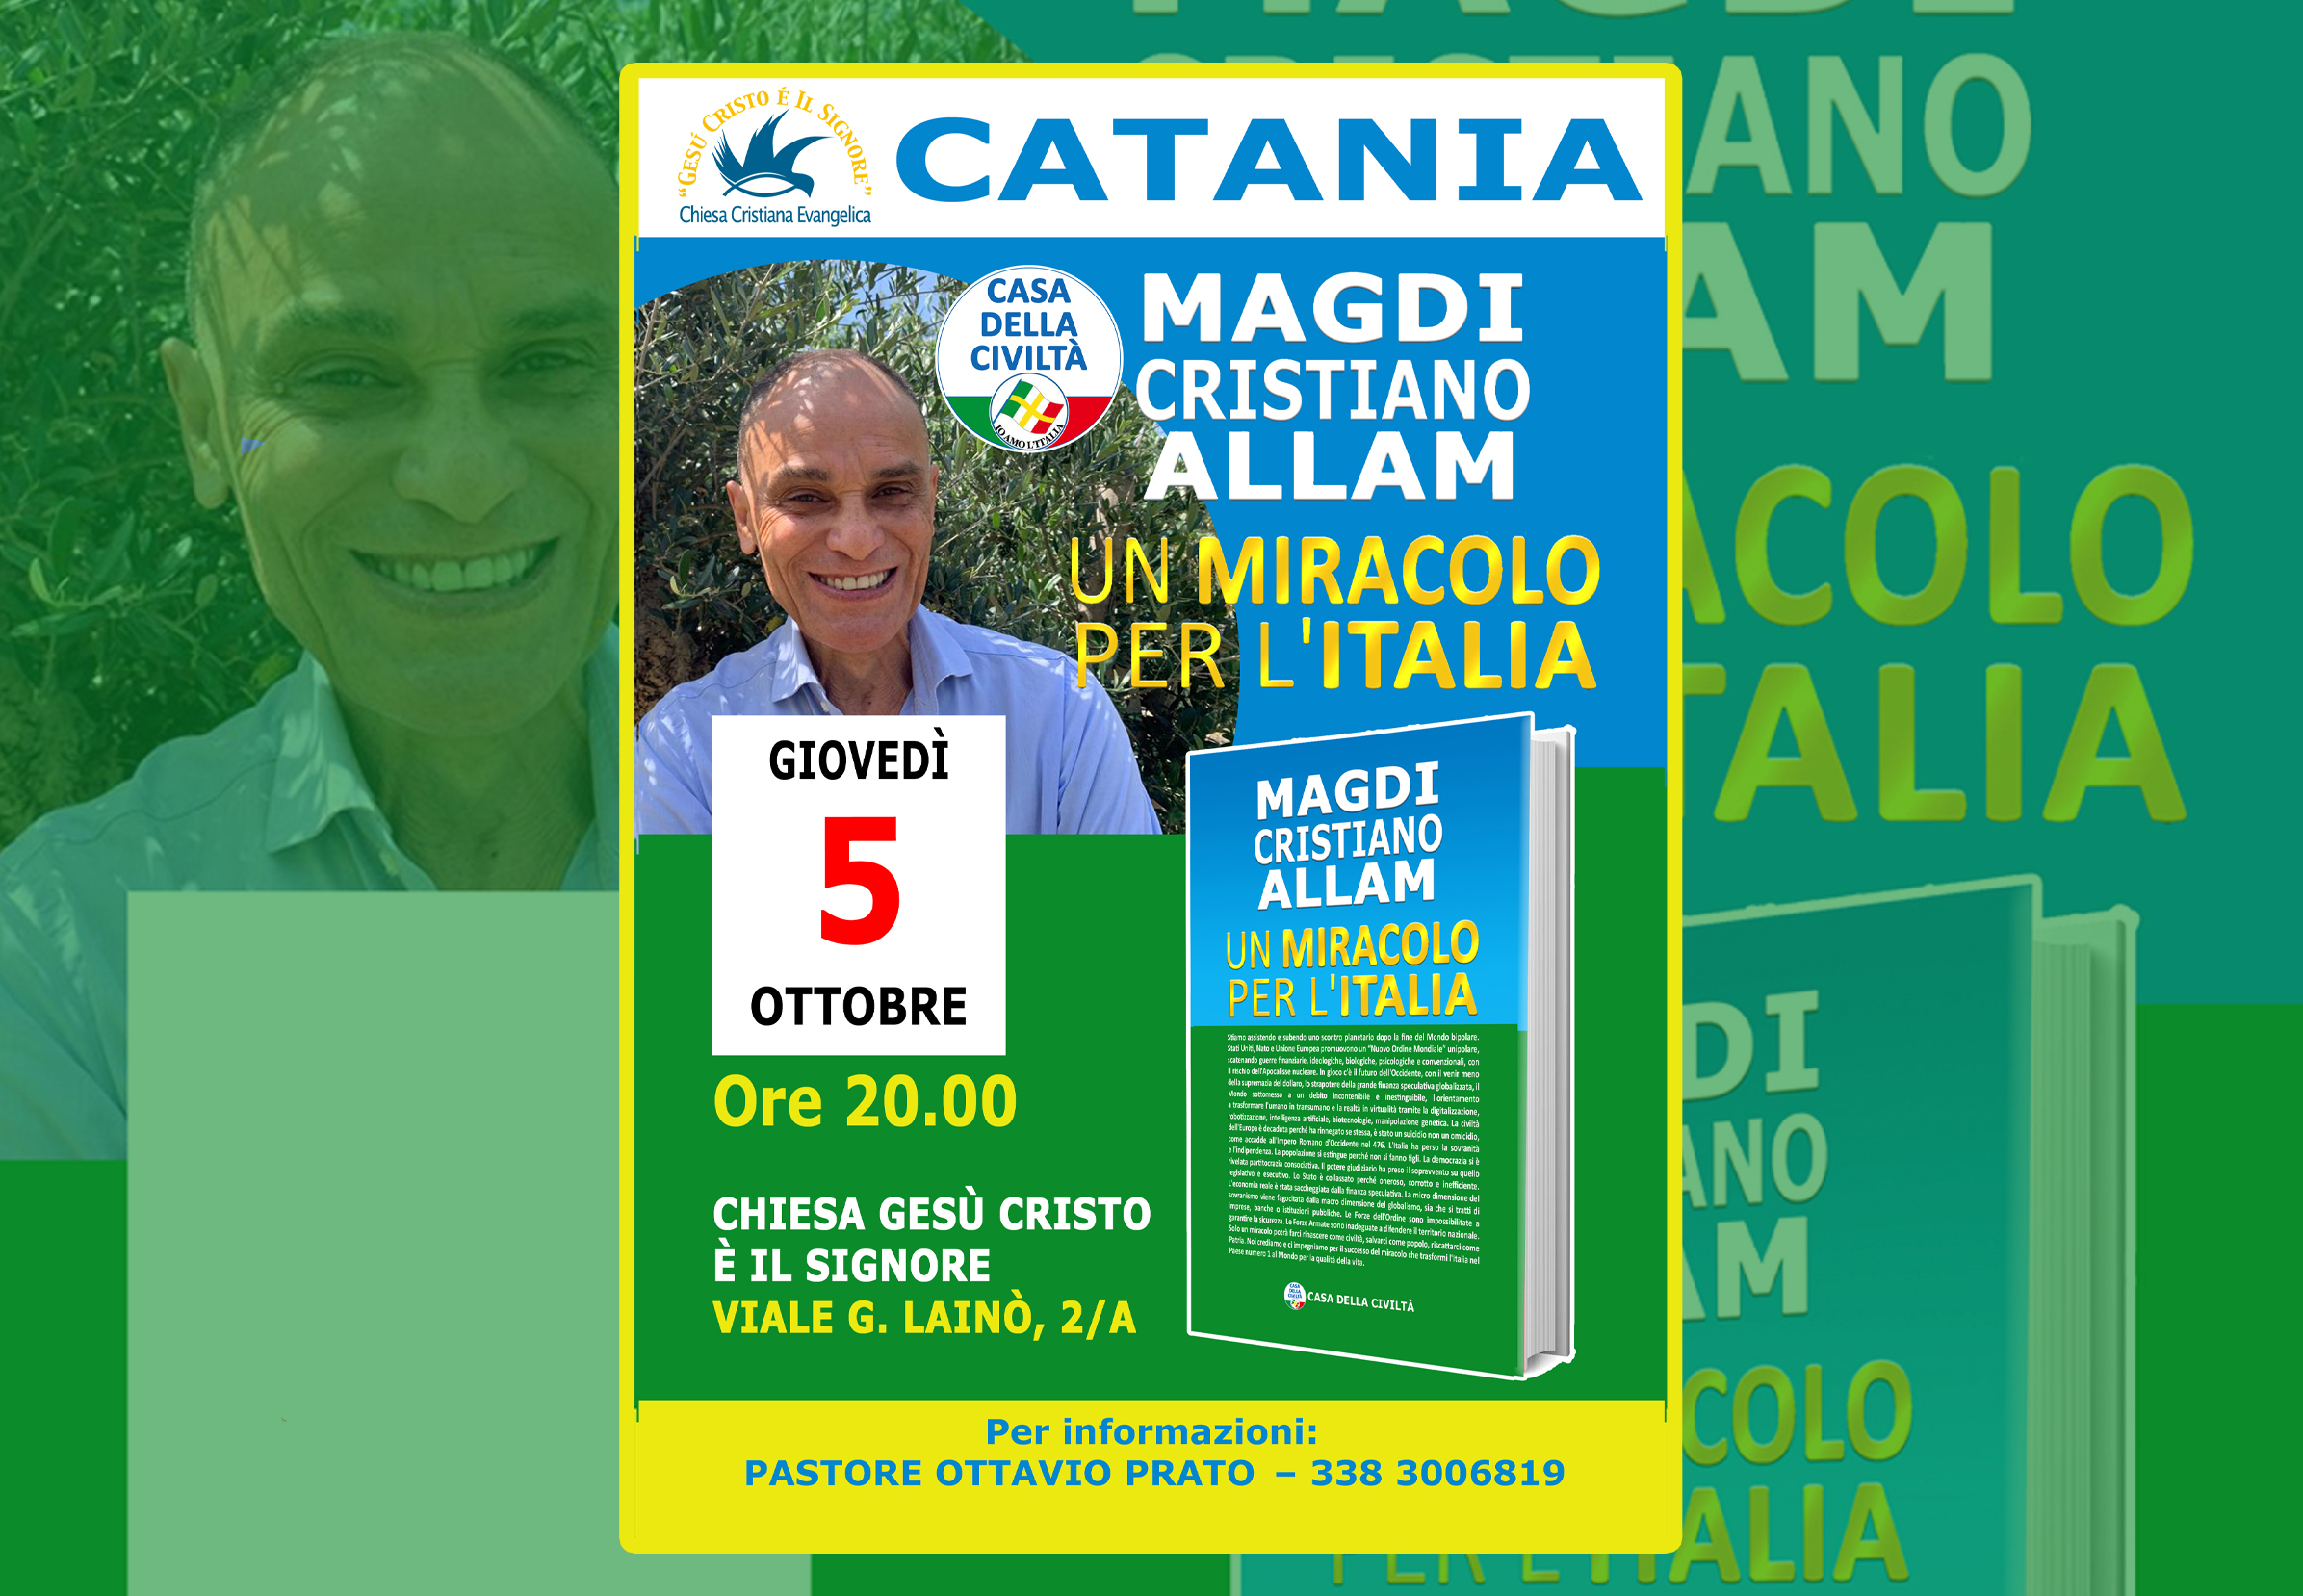 Giovedì 5 ottobre– ore 20.00 – Presentazione “UN MIRACOLO PER L’ITALIA” a CATANIA